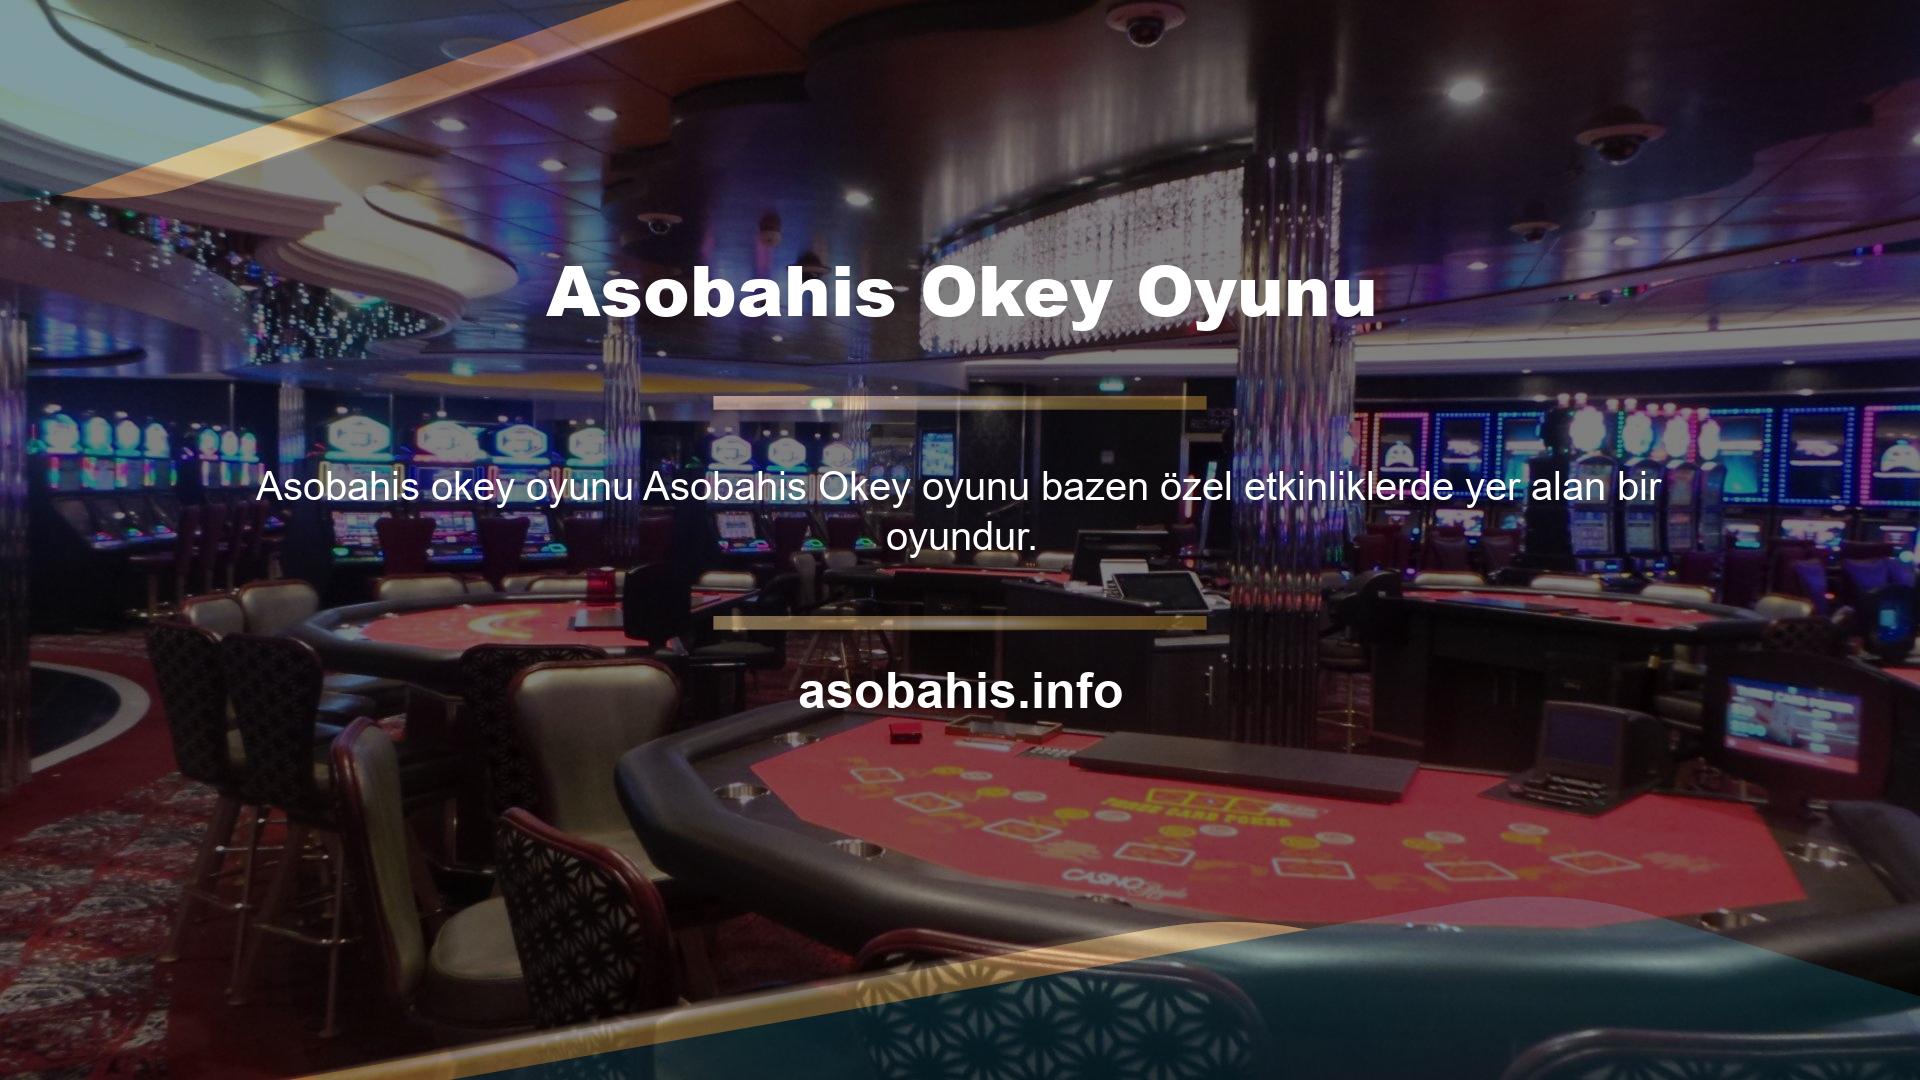 Asobahis Organizasyon bonusları ve kampanyaları kategori bazlı veya oyun bazlı olabilir